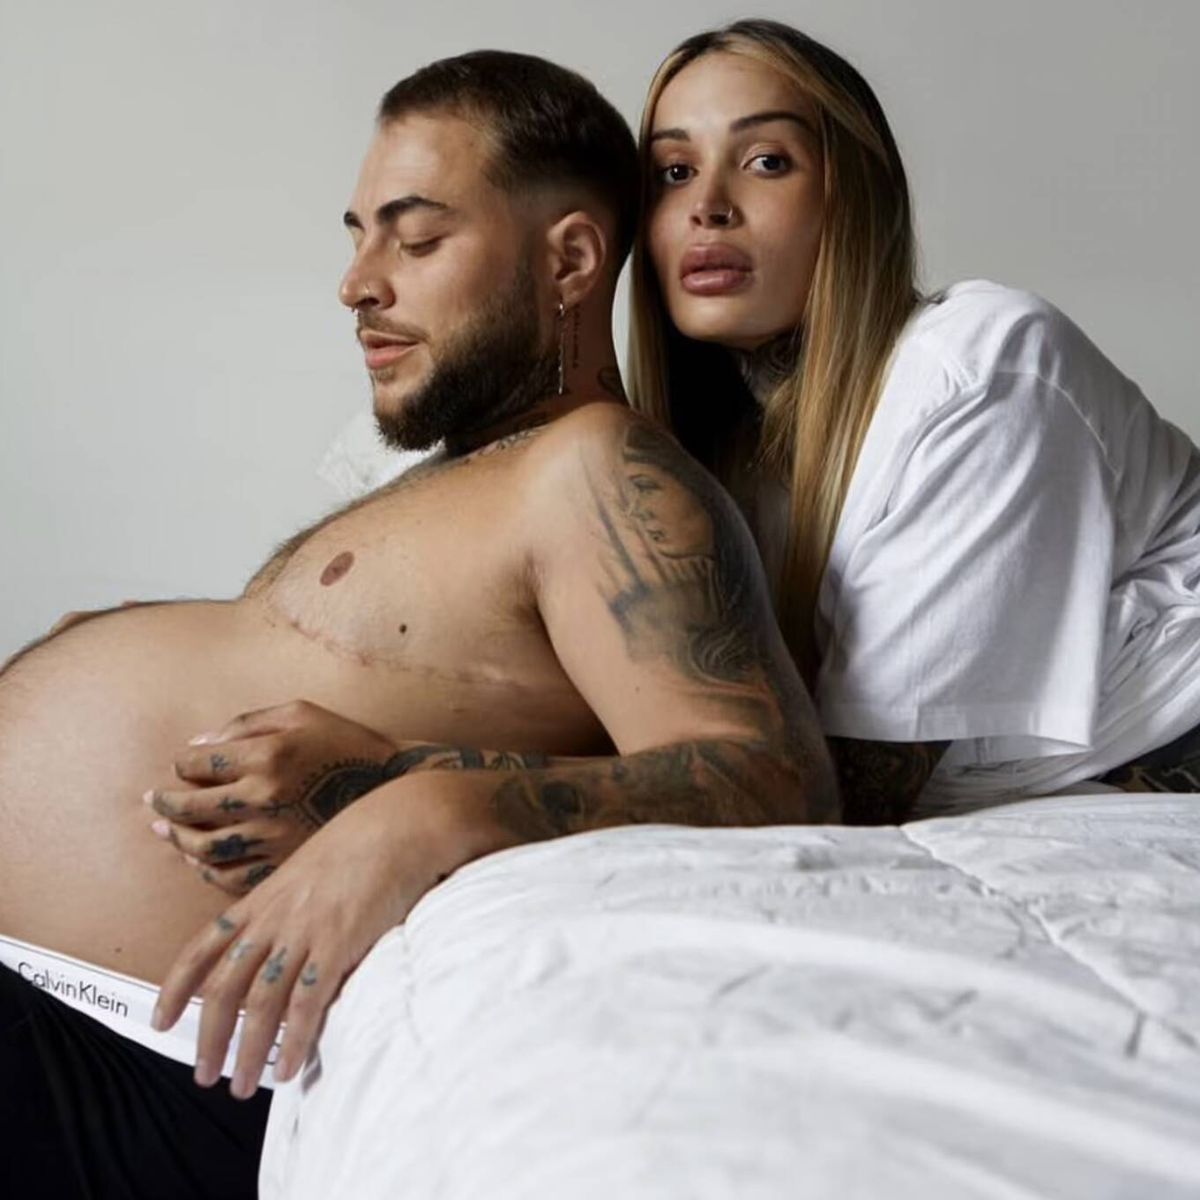 Calvin Klein revoluciona las redes al apostar por un modelo trans embarazado